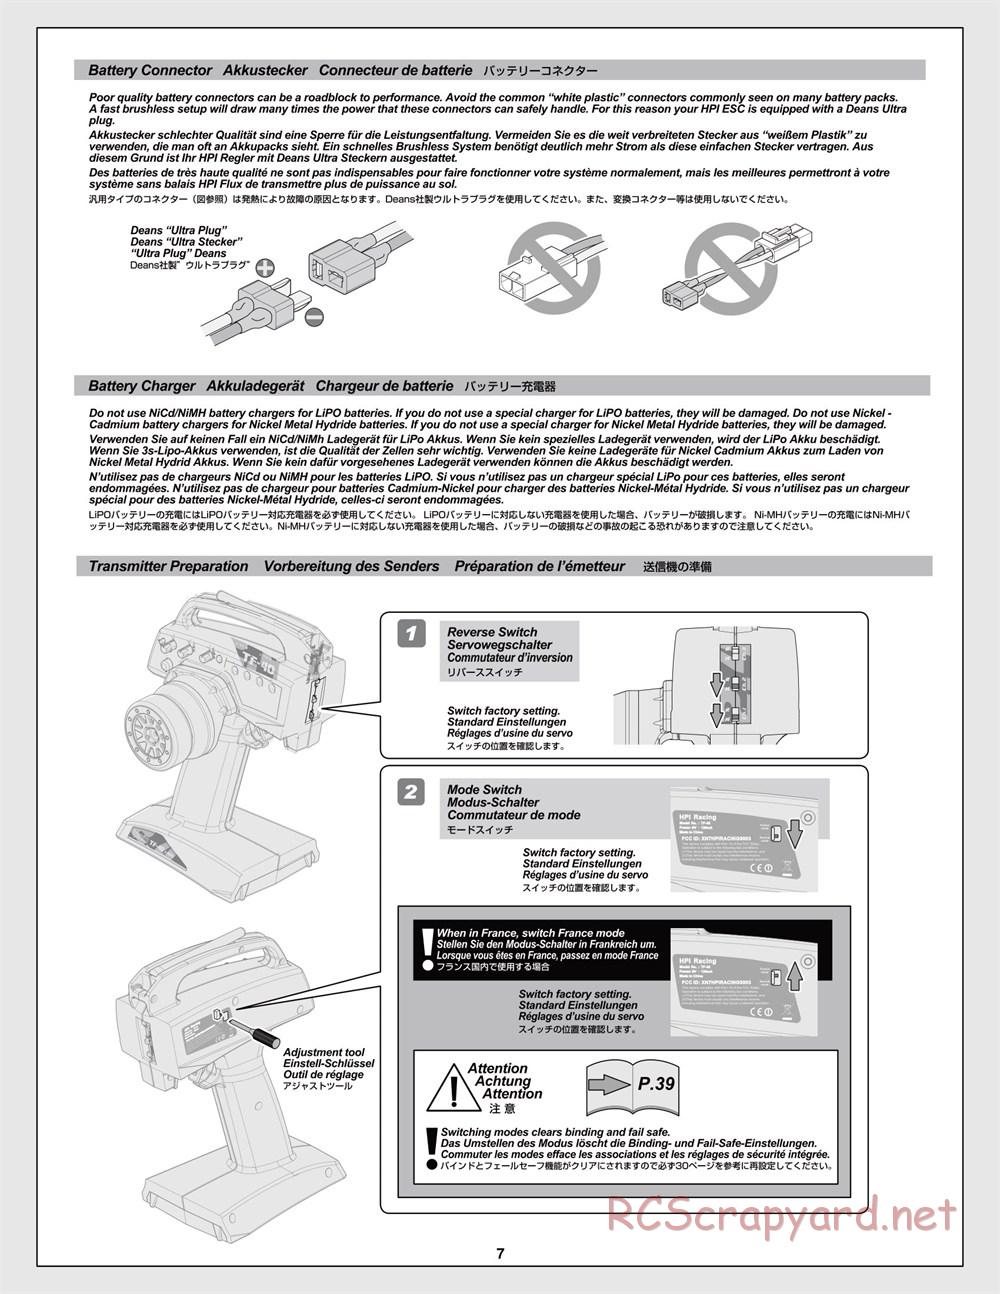 HPI - Trophy Flux Truggy - Manual - Page 7